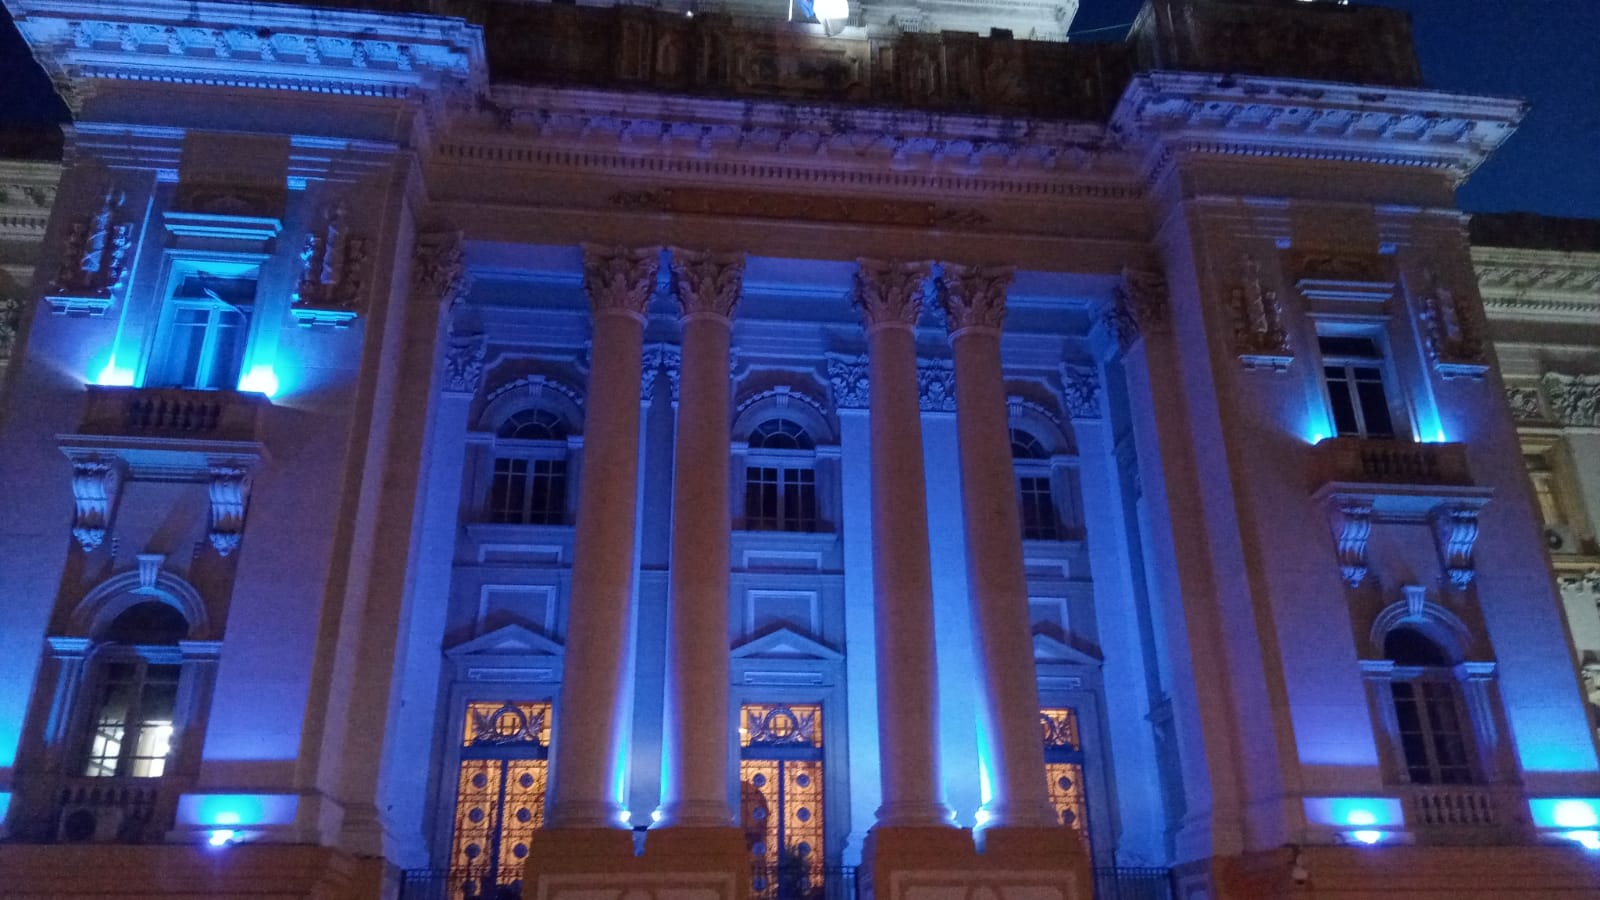 Foto exibe fachada do prédio do Palácio da Justiça iluminada na cor azul